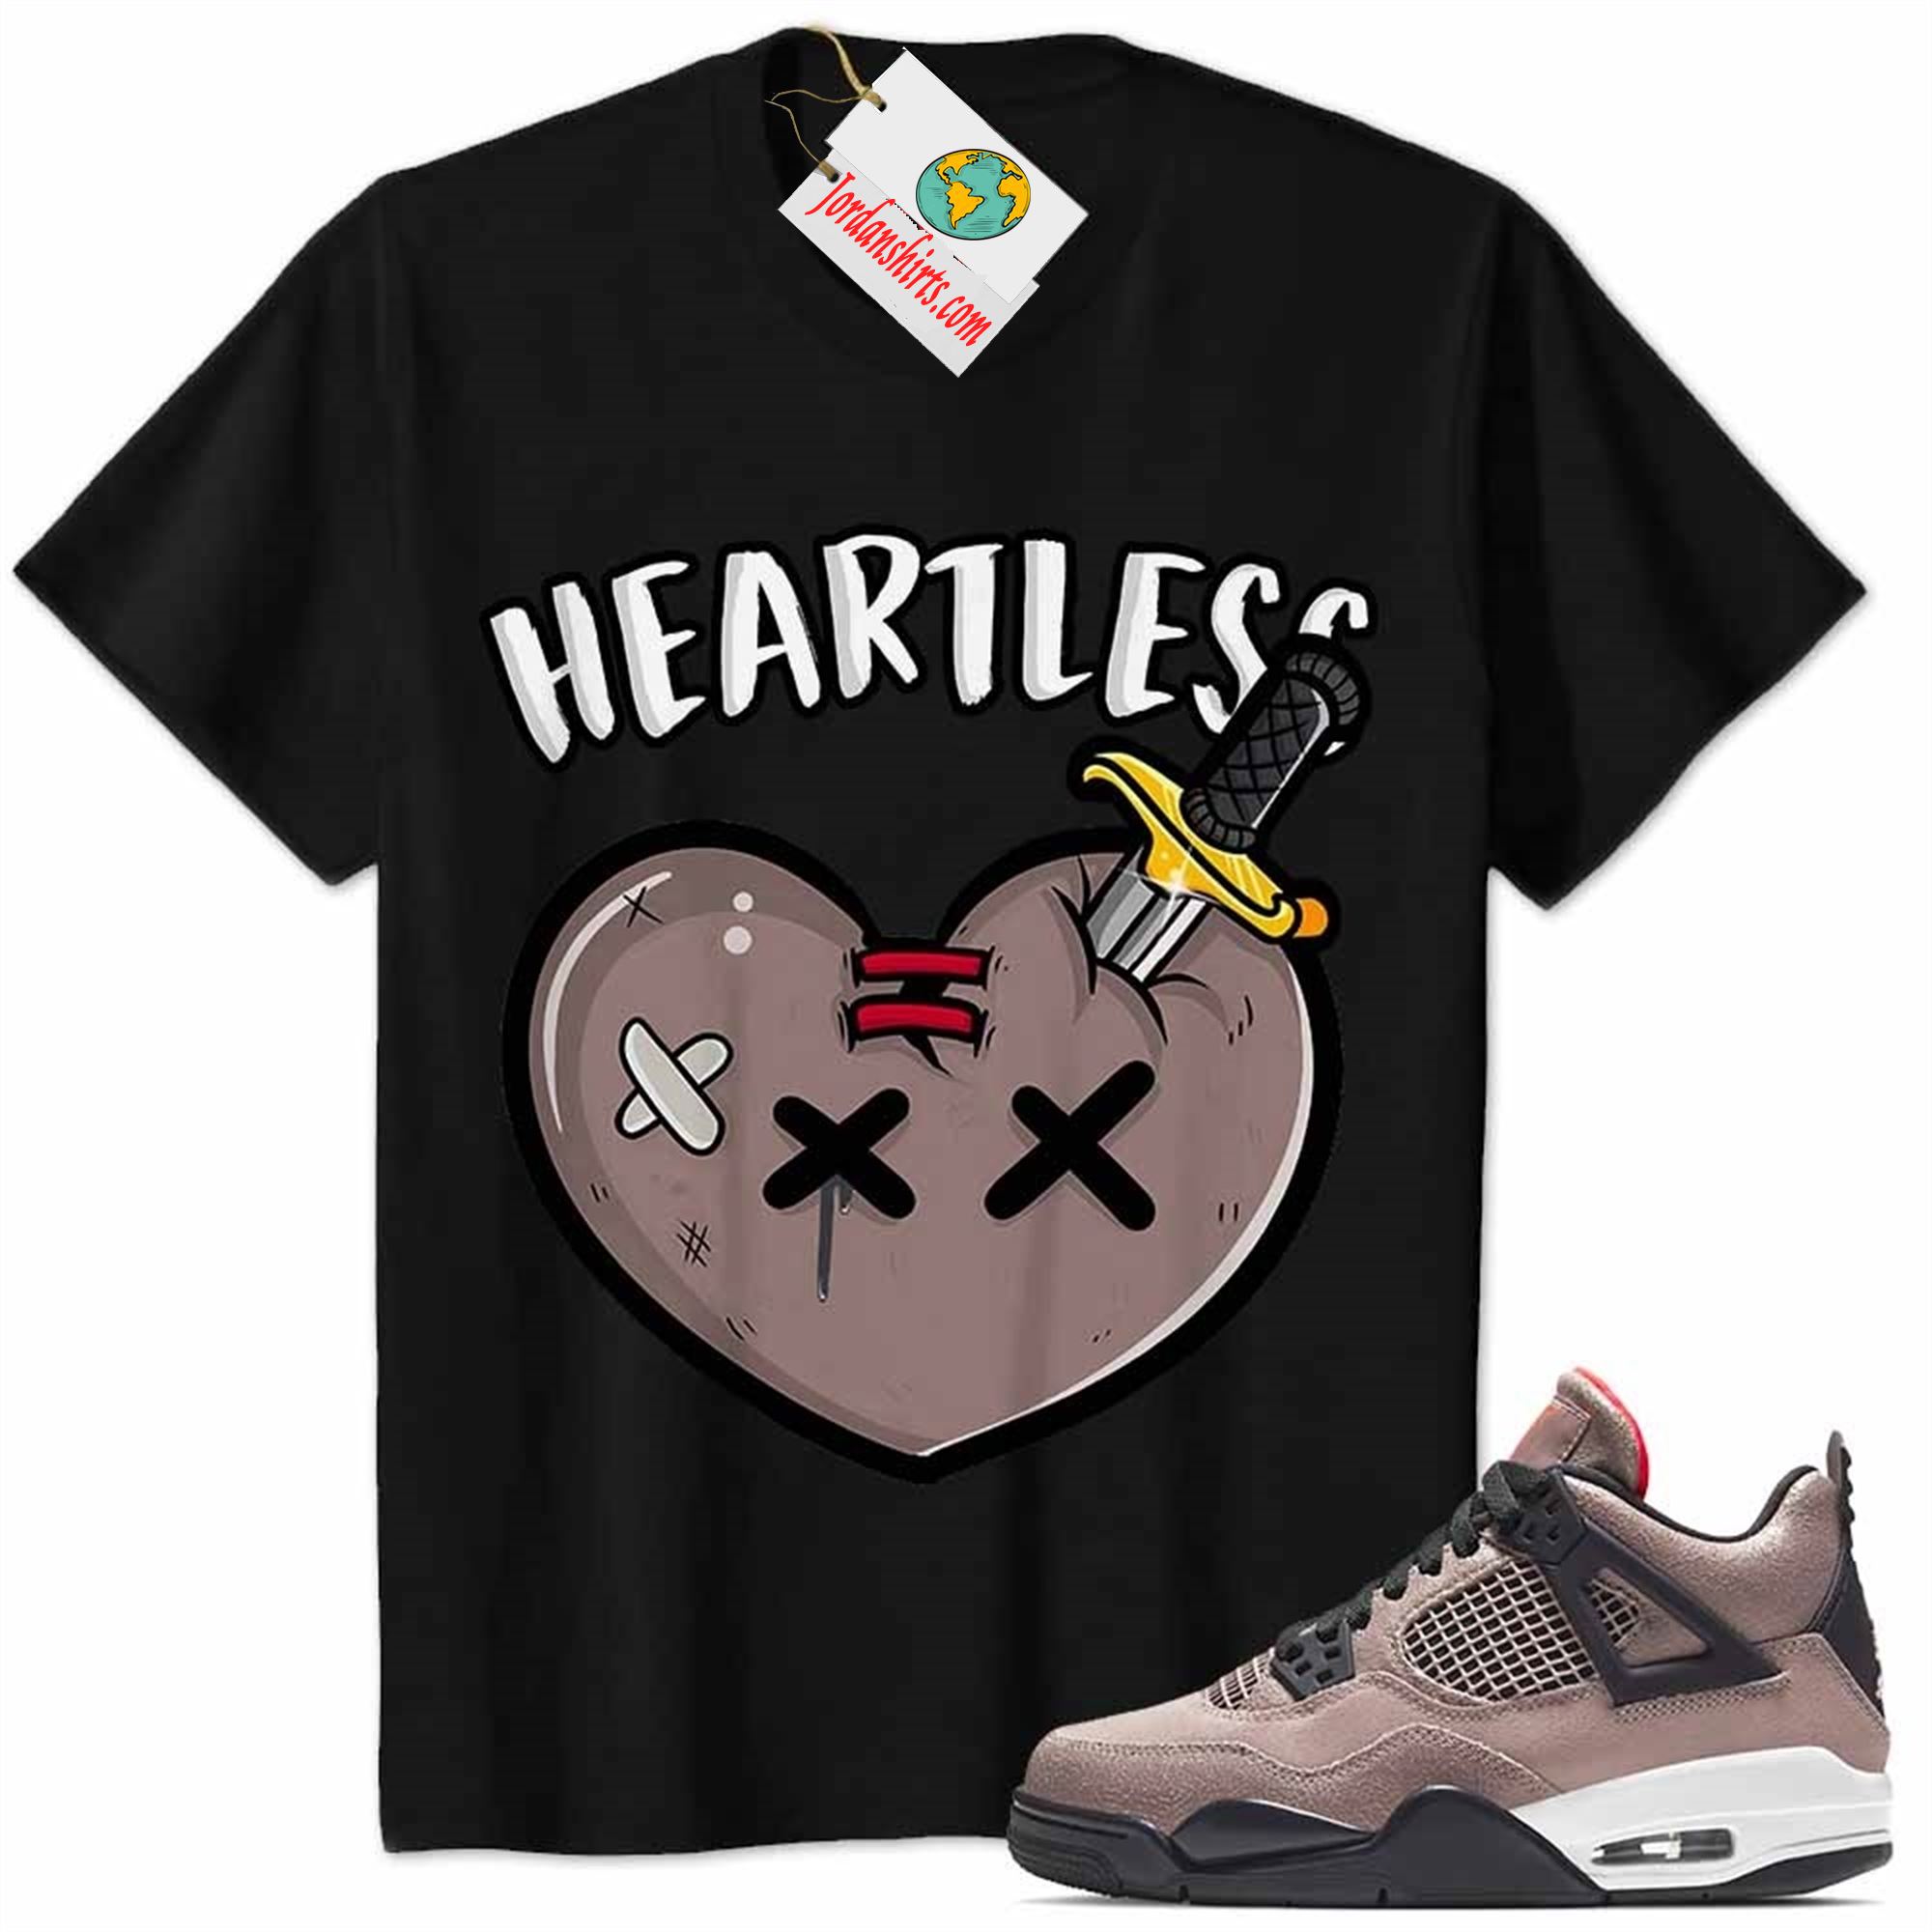 Jordan 4 Shirt, Crying Heart Heartless Black Air Jordan 4 Taupe Haze 4s Size Up To 5xl